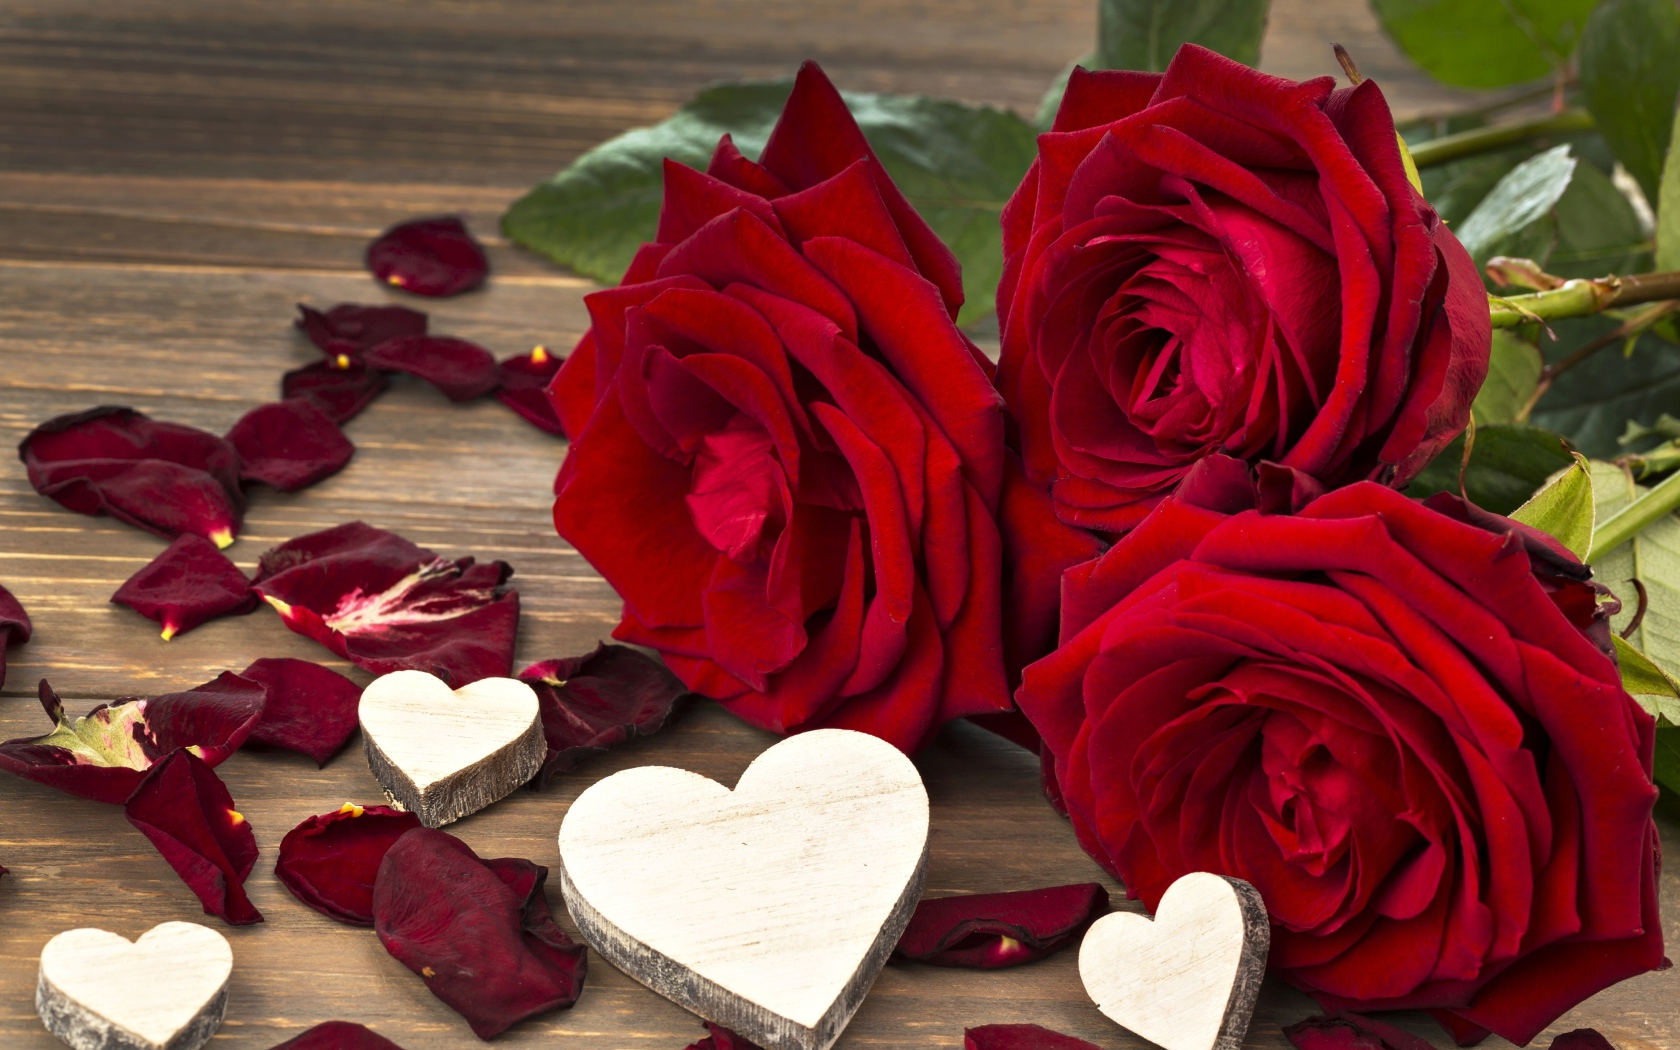 Три крупные красные розы с деревянными сердечками